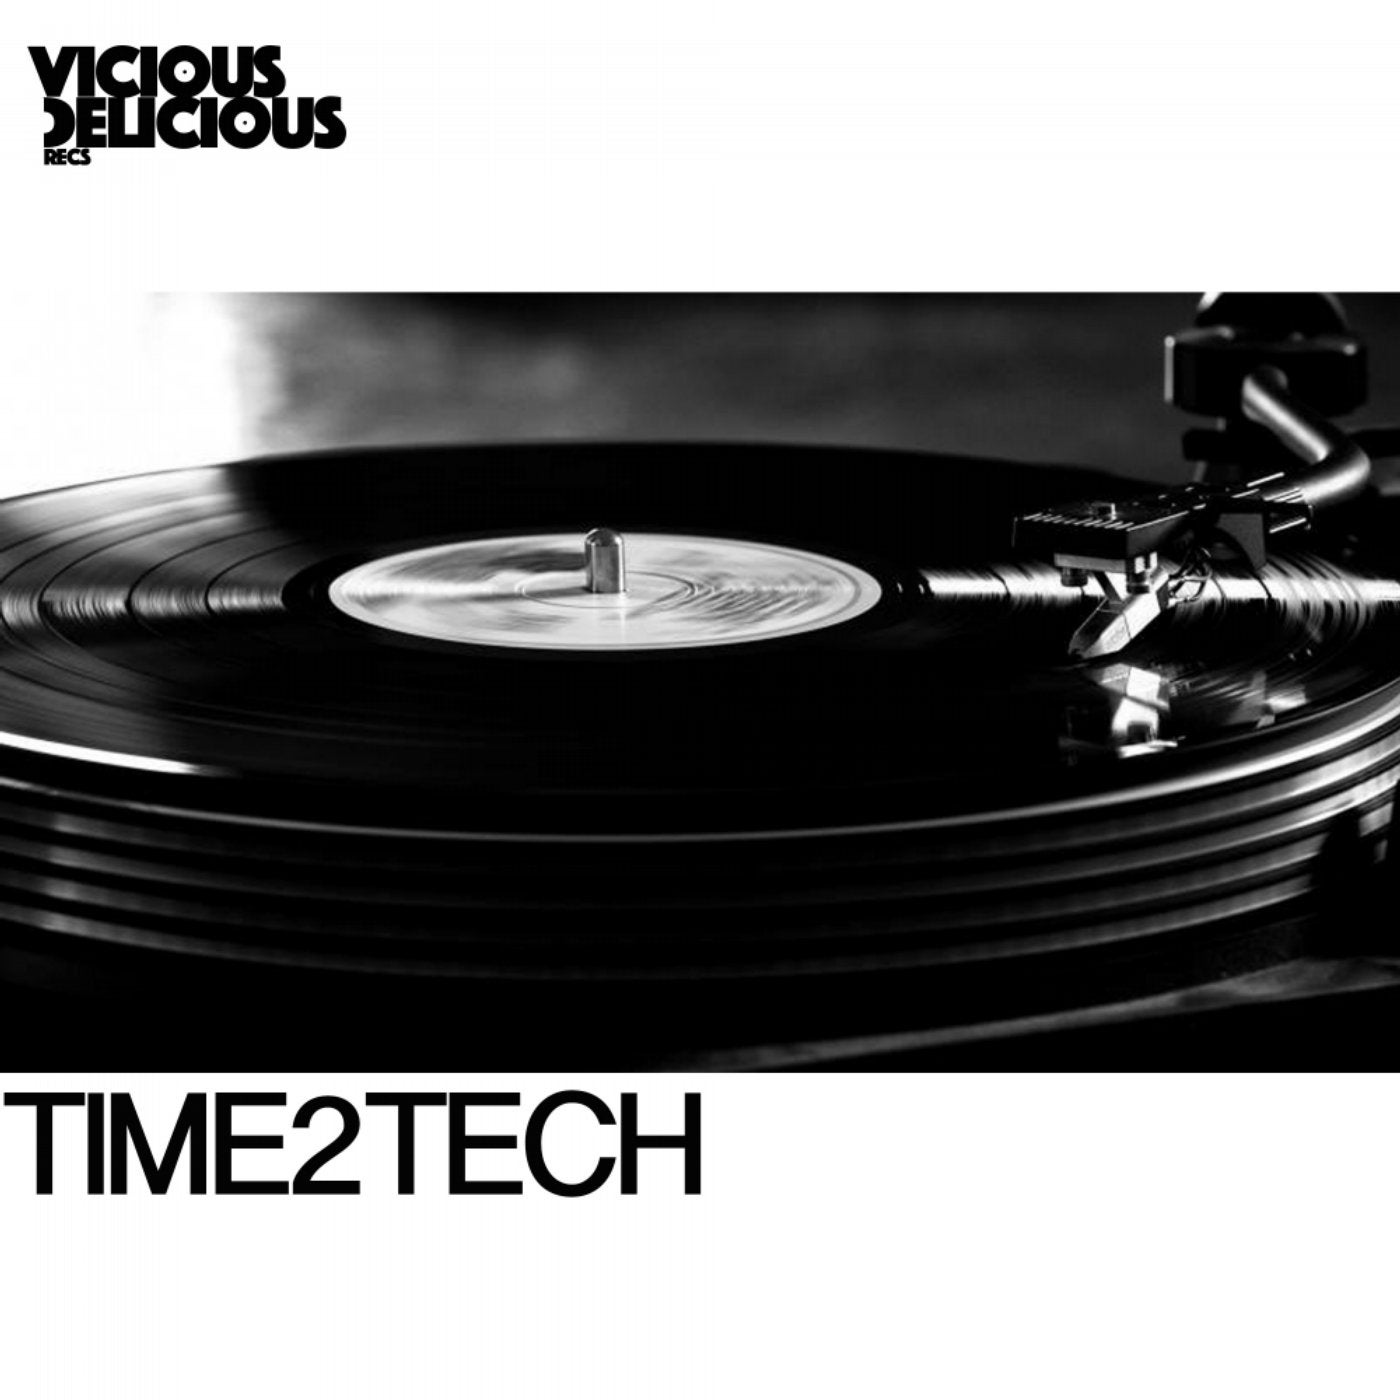 Time2Tech